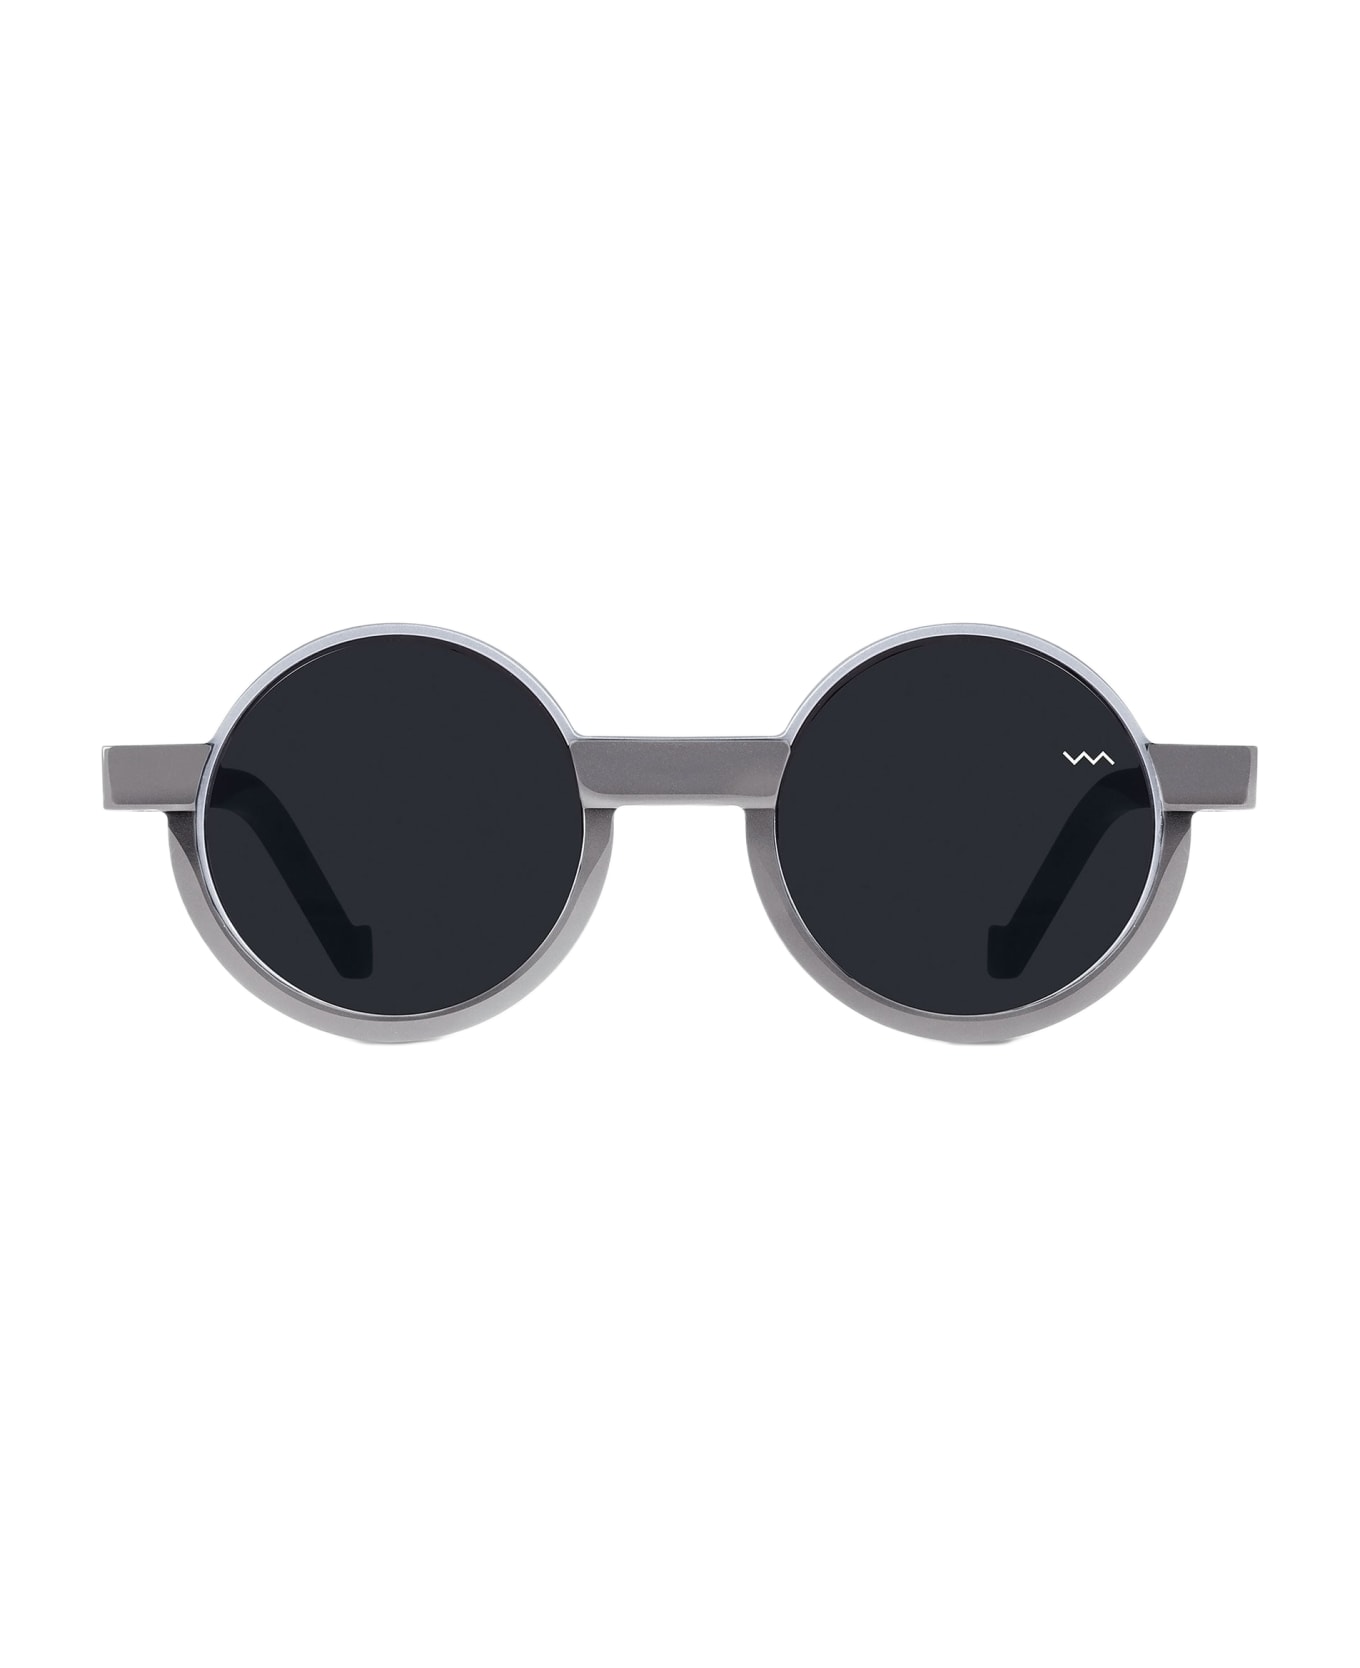 VAVA Cl0011 - Light Grey Sunglasses - light grey サングラス